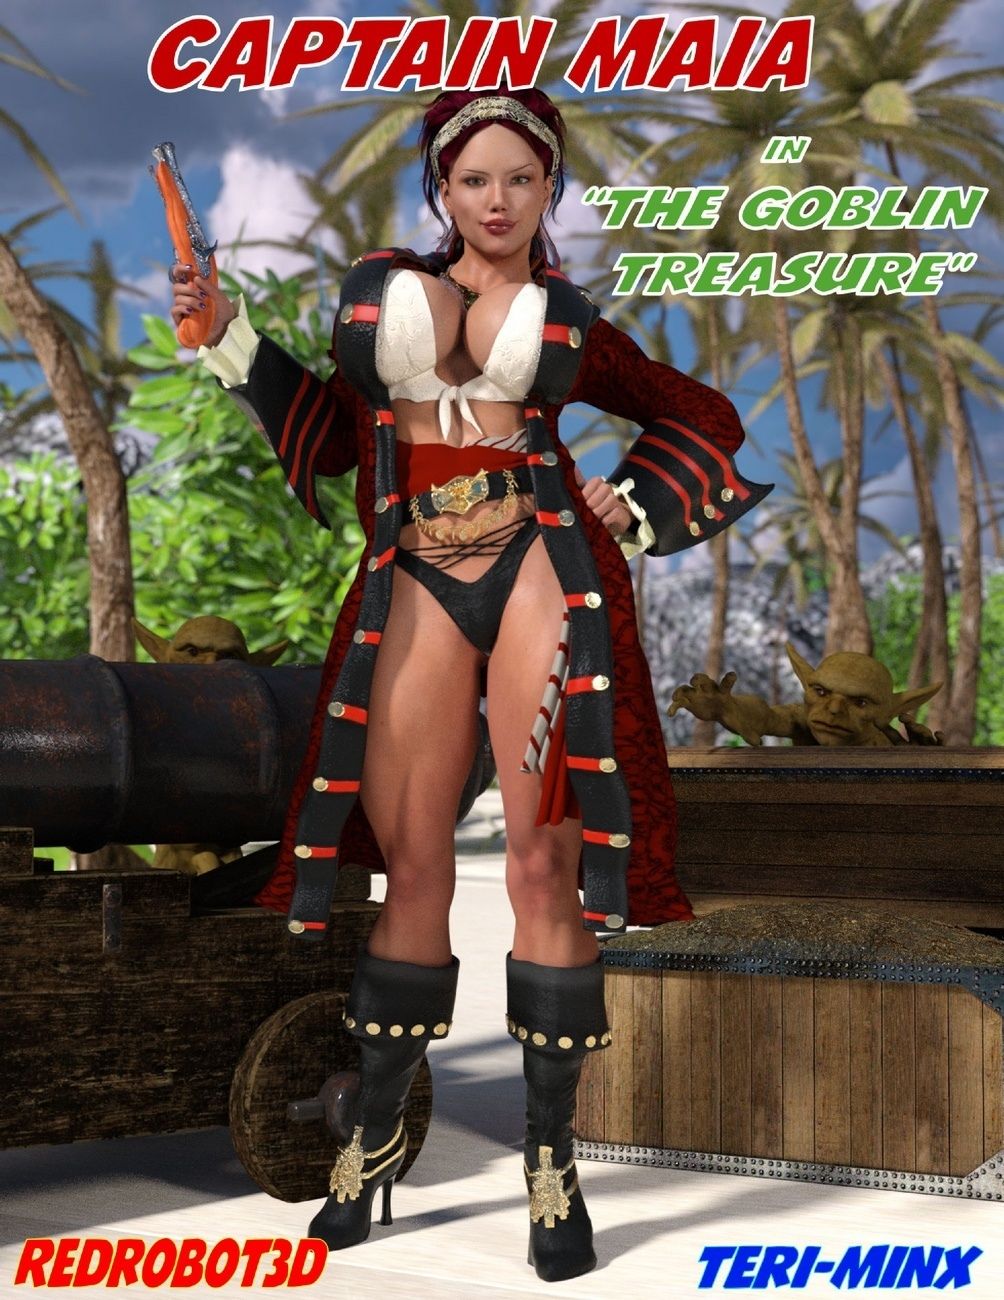 Captain Maia & The Goblin Treasure page 1